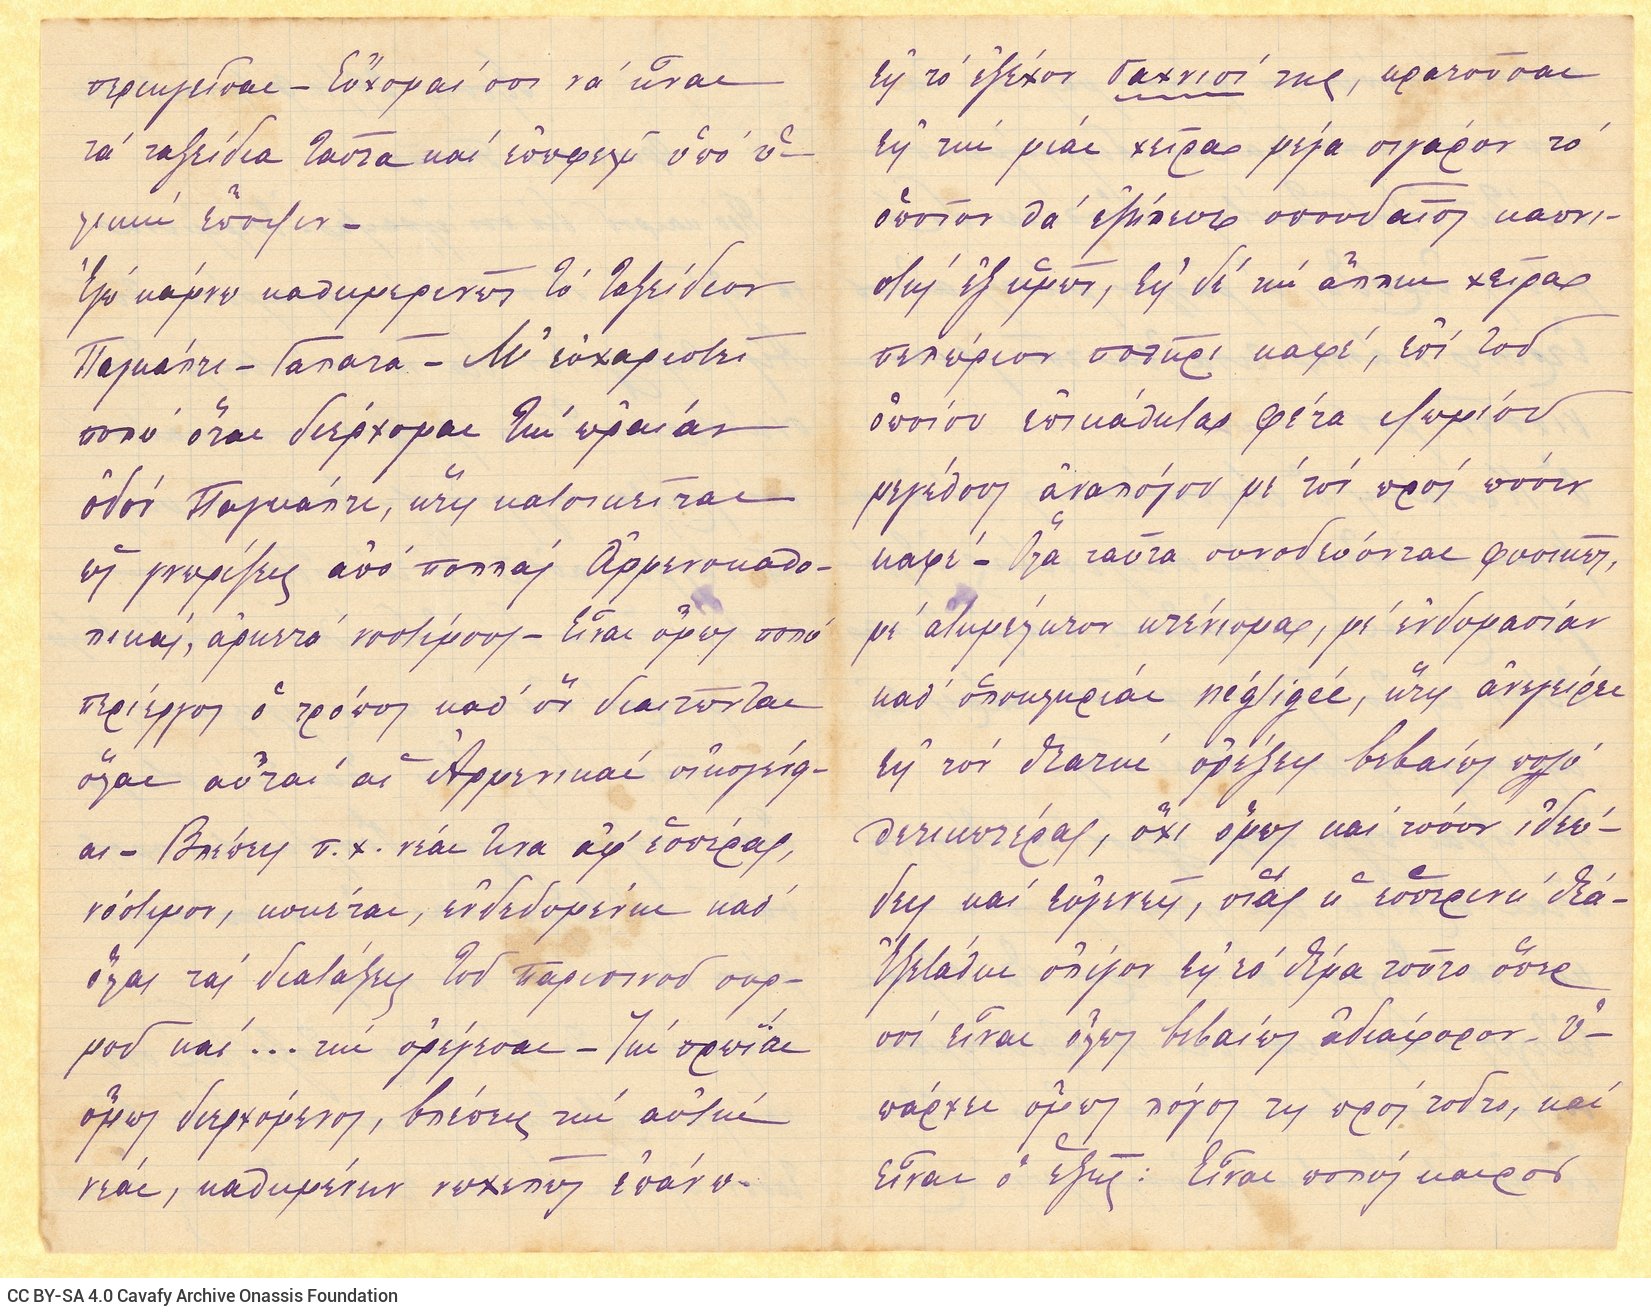 Χειρόγραφη επιστολή του Ι. Σταματιάδη προς τον Παύλο Καβάφη σε δύο τ�